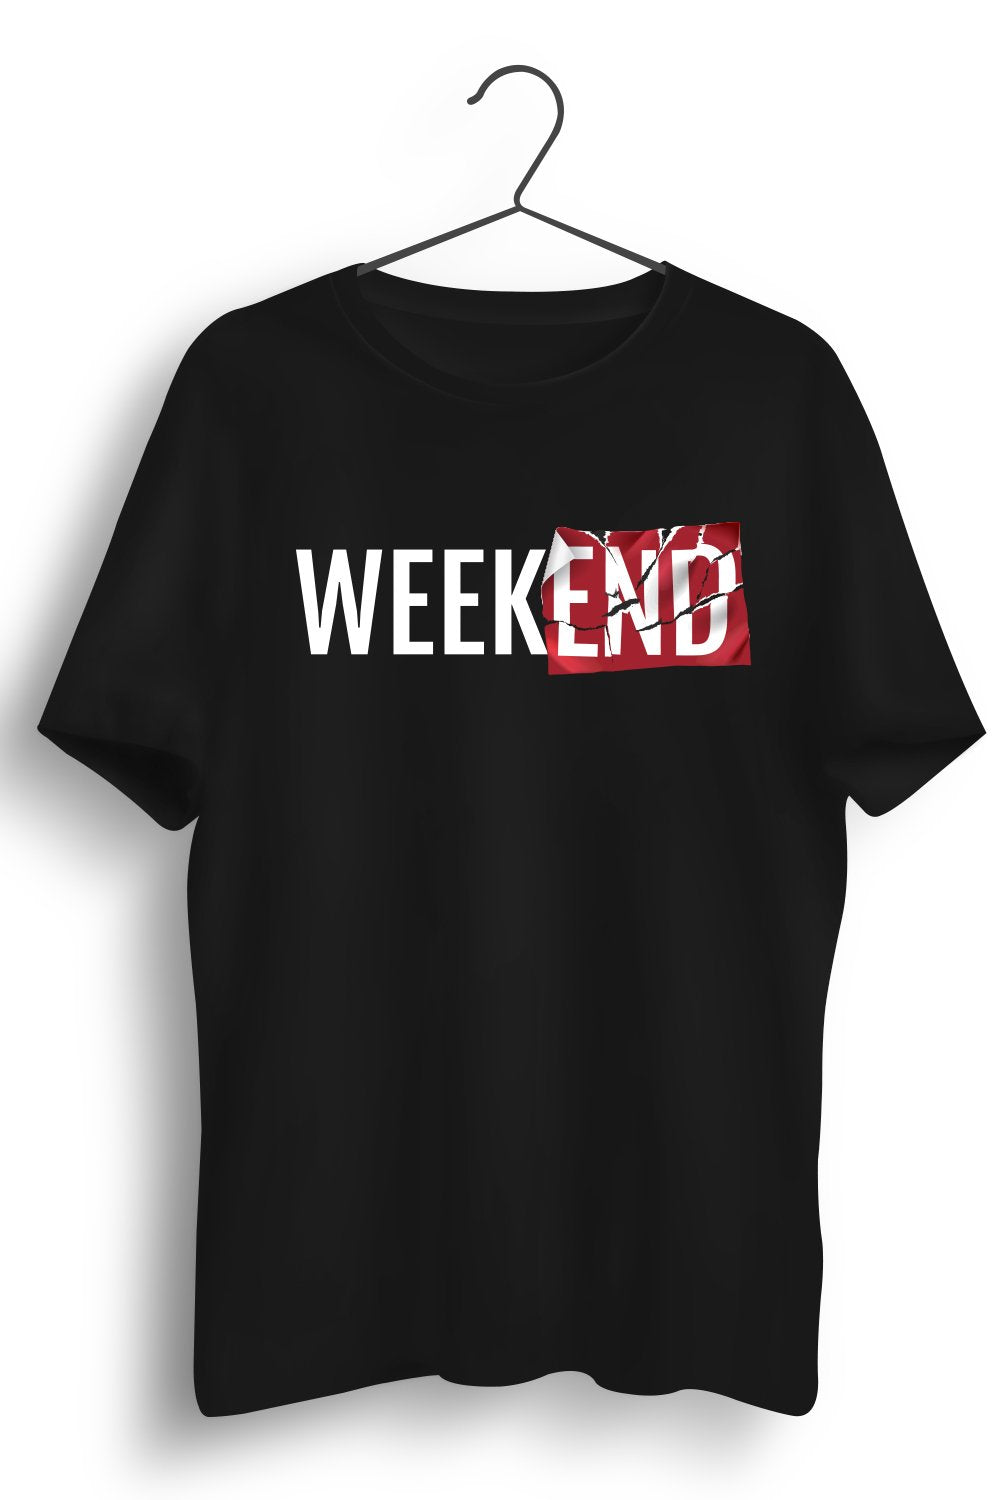 Weekend Graphic Printed Black Tshirt